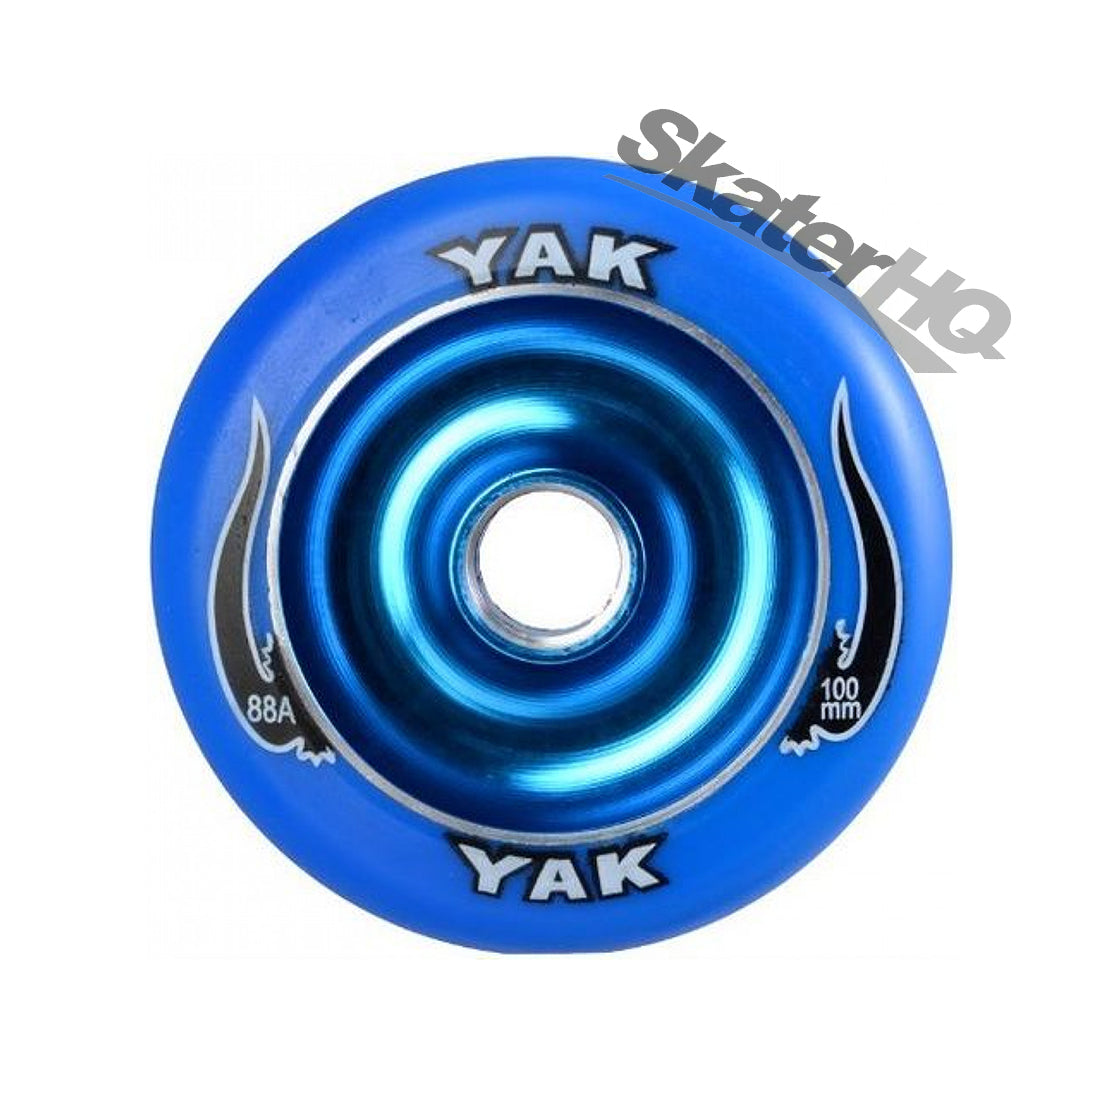 Yak Scat 100mm 88a Metalcore - Blue Scooter Wheels